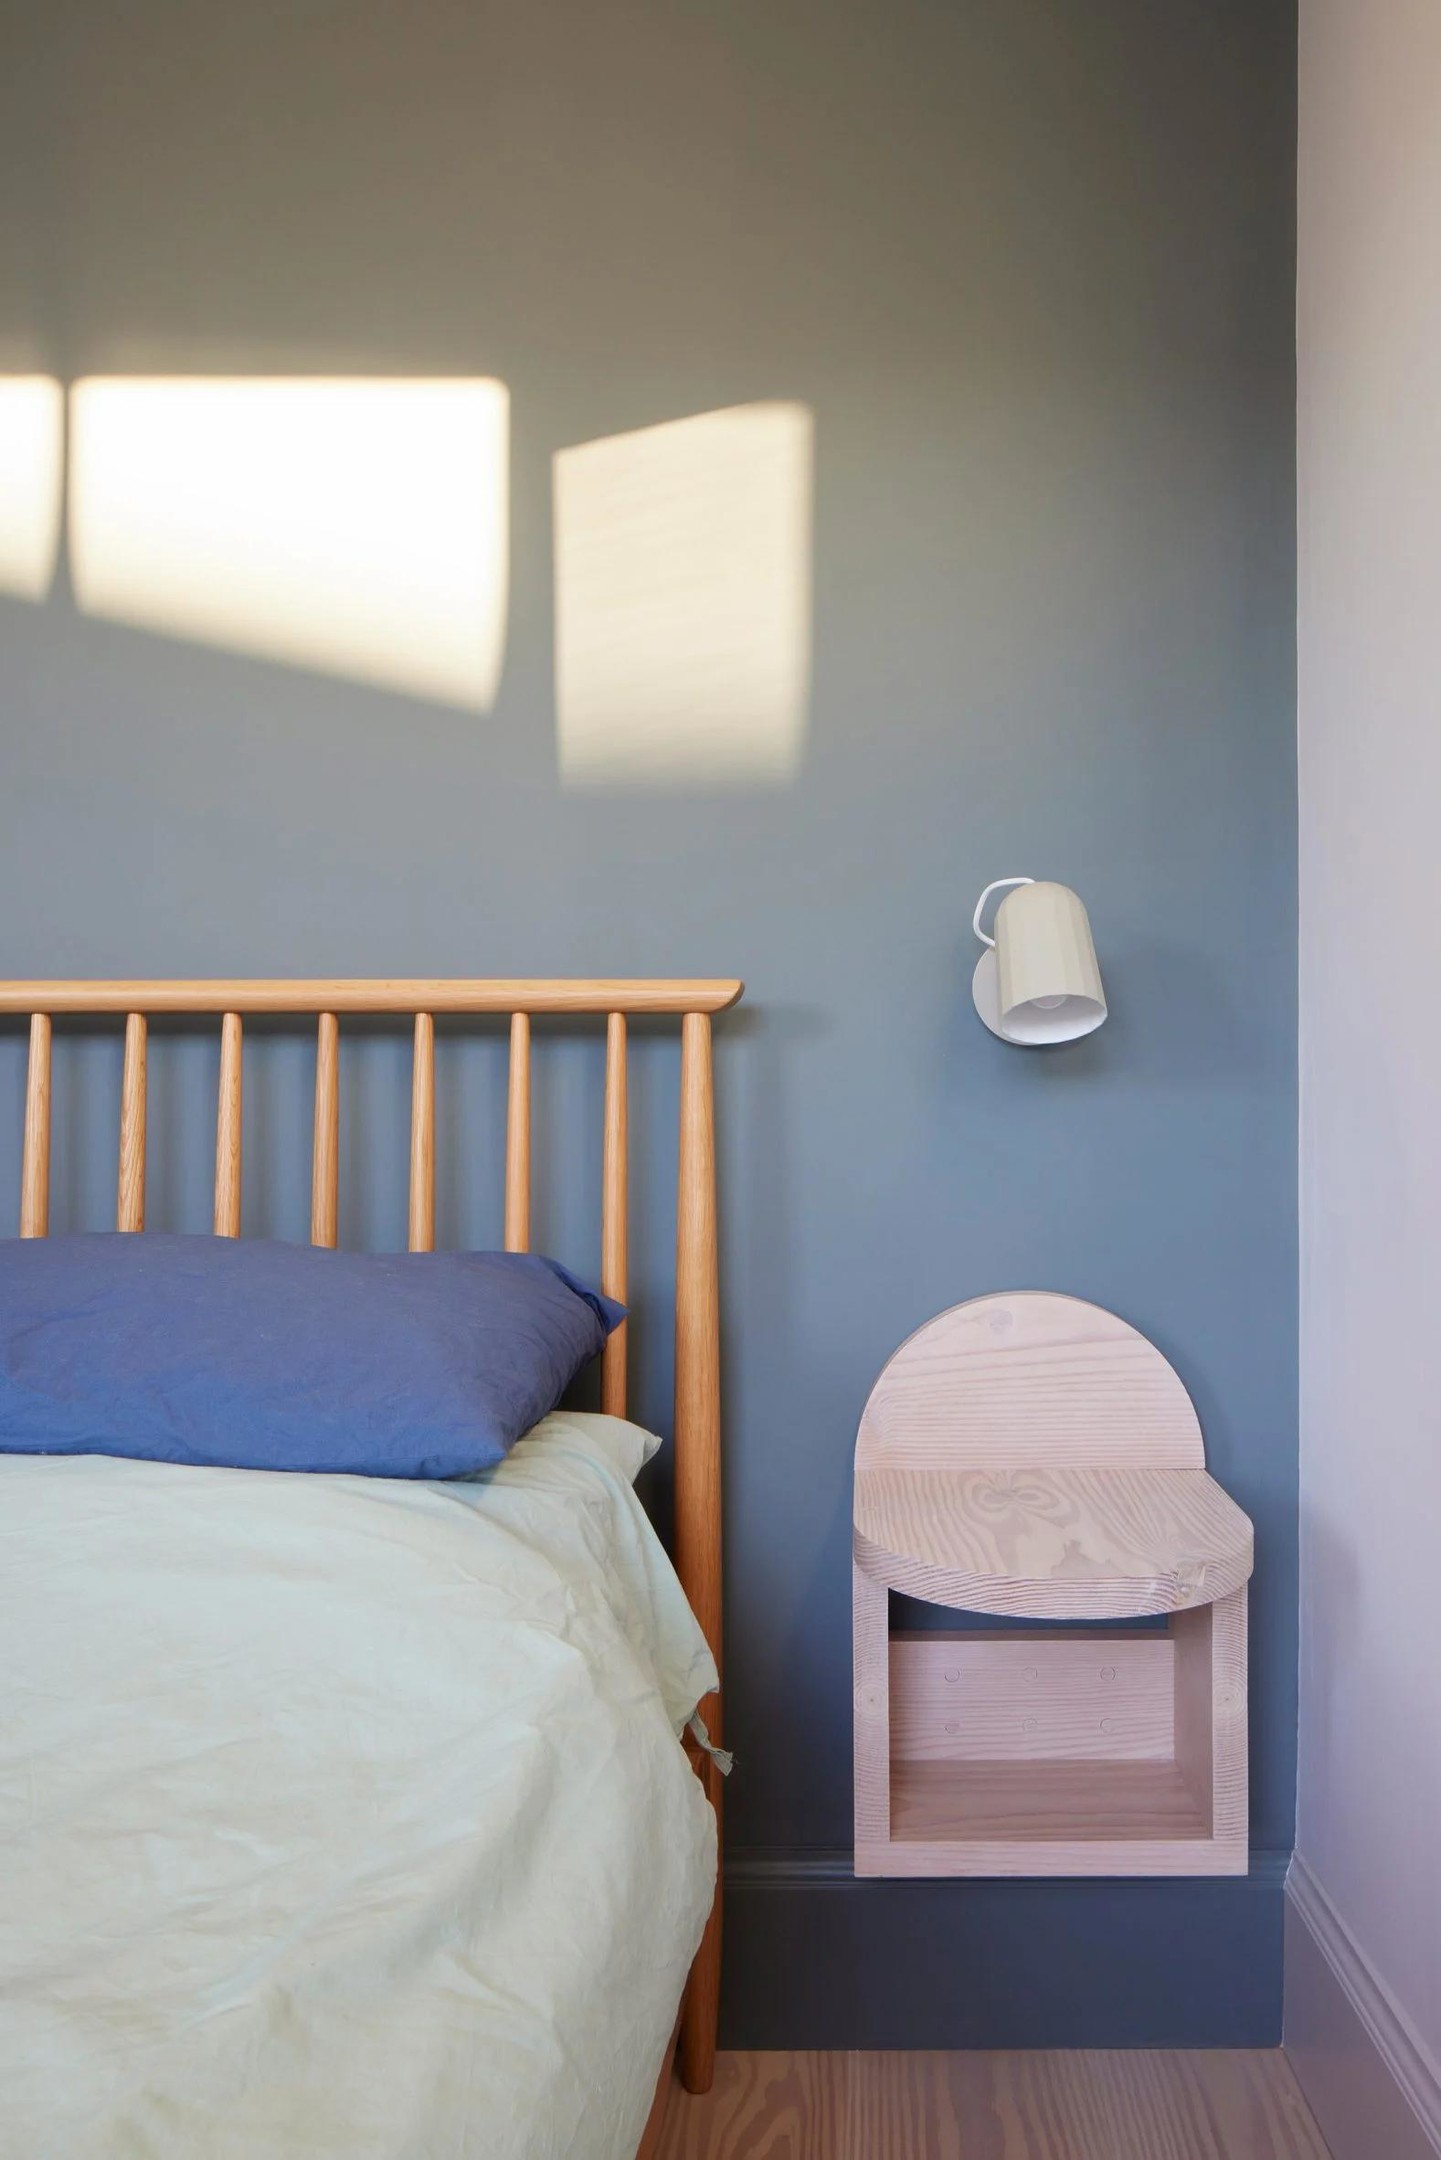 Nội thất phòng ngủ được thiết kế tối giản với giải pháp gắn tường giúp giải phóng mặt sàn như đèn ngủ, táp đầu giường đối xứng 2 bên. Loại gỗ làm táp đầu giường cũng là gỗ thông như ở góc làm việc.